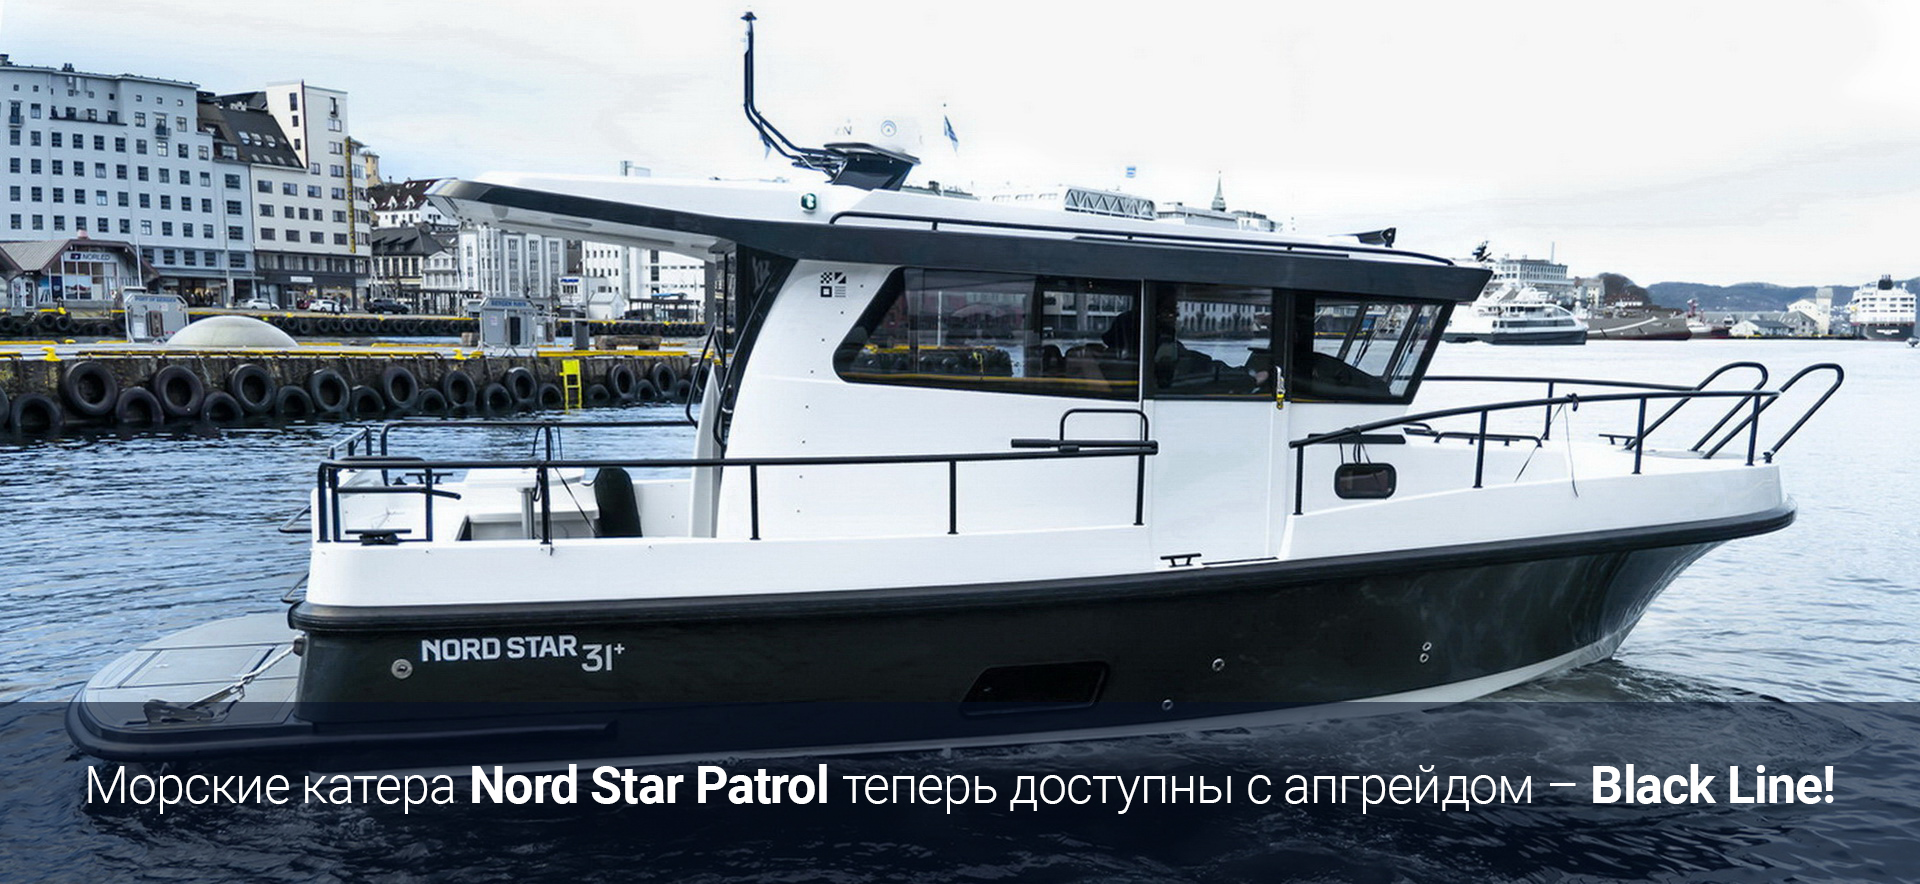 Катера Nord Star Patrol теперь доступны с апгрейдом – Black Line!